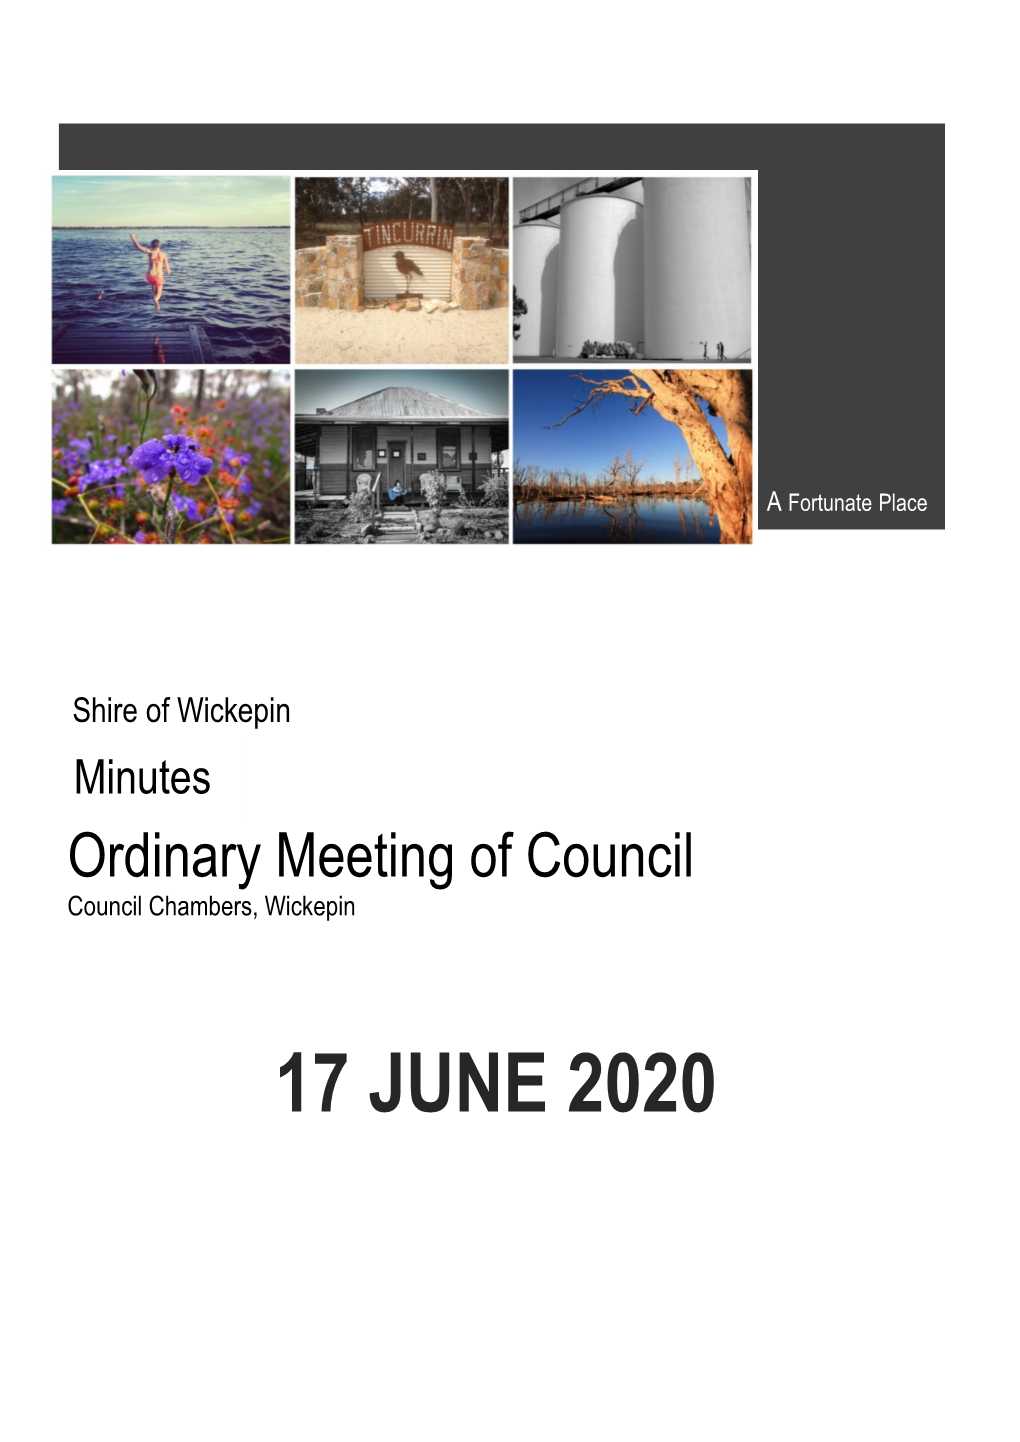 17 JUNE 2020 Shire of Wickepin 17 June 2020